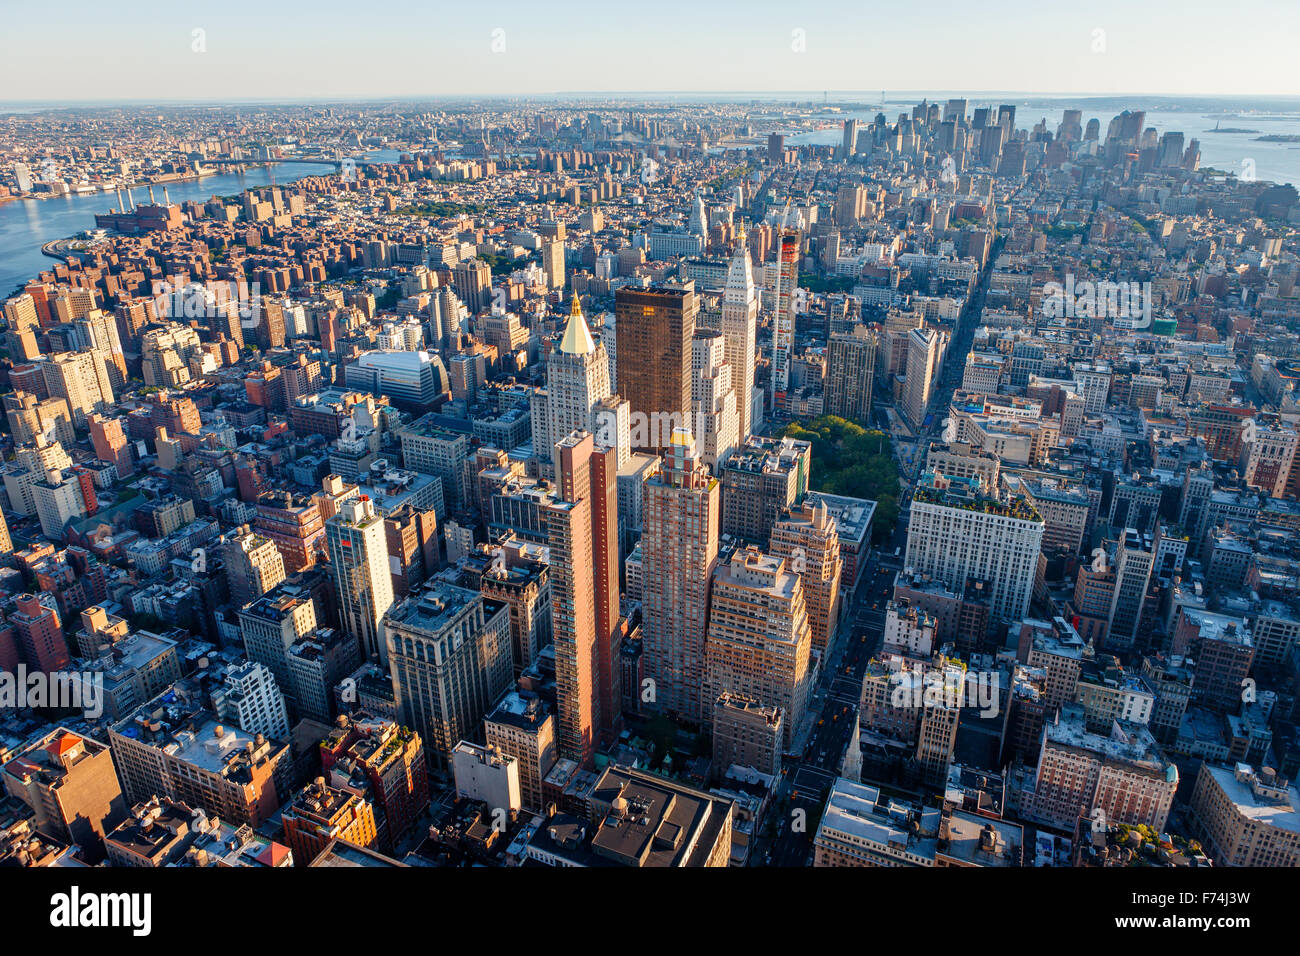 Vue aérienne de l'Afrique du Manhattan, New York City Midtown présentation, Chelsea, Manhattan, quartier financier et de l'East Village Banque D'Images